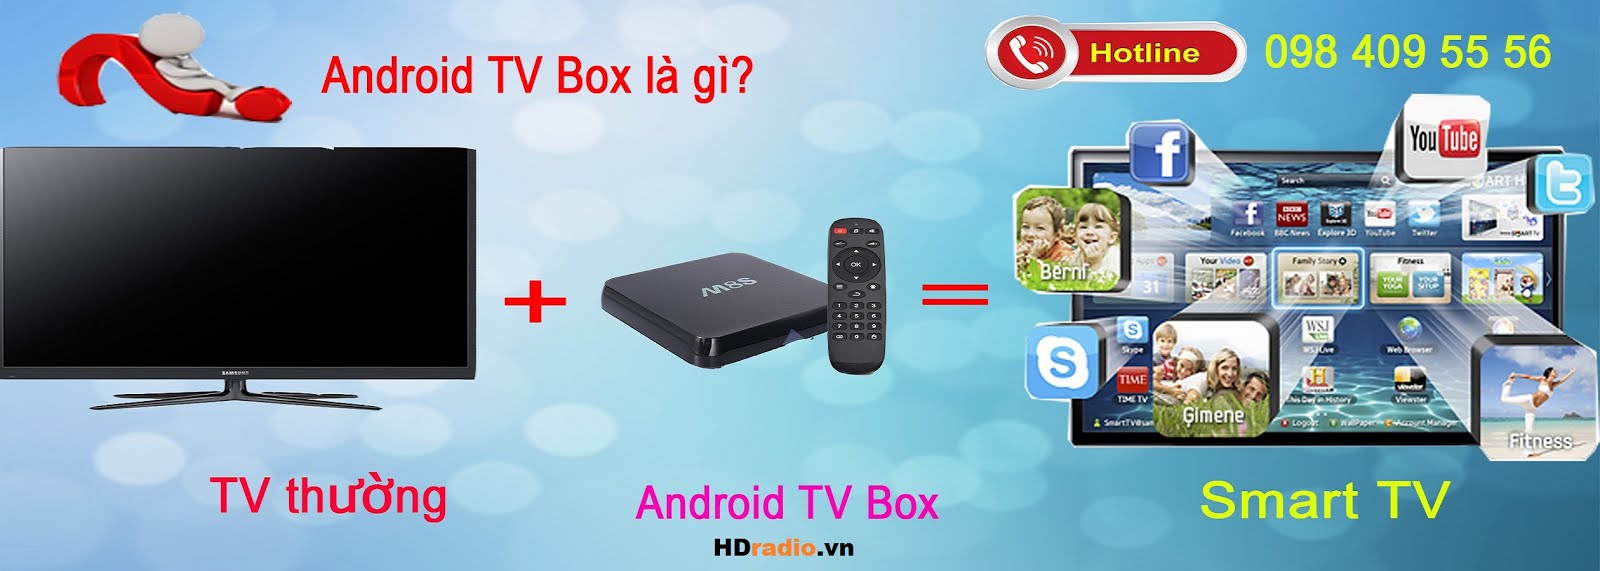 Android Tv Box chính hãng giá tốt